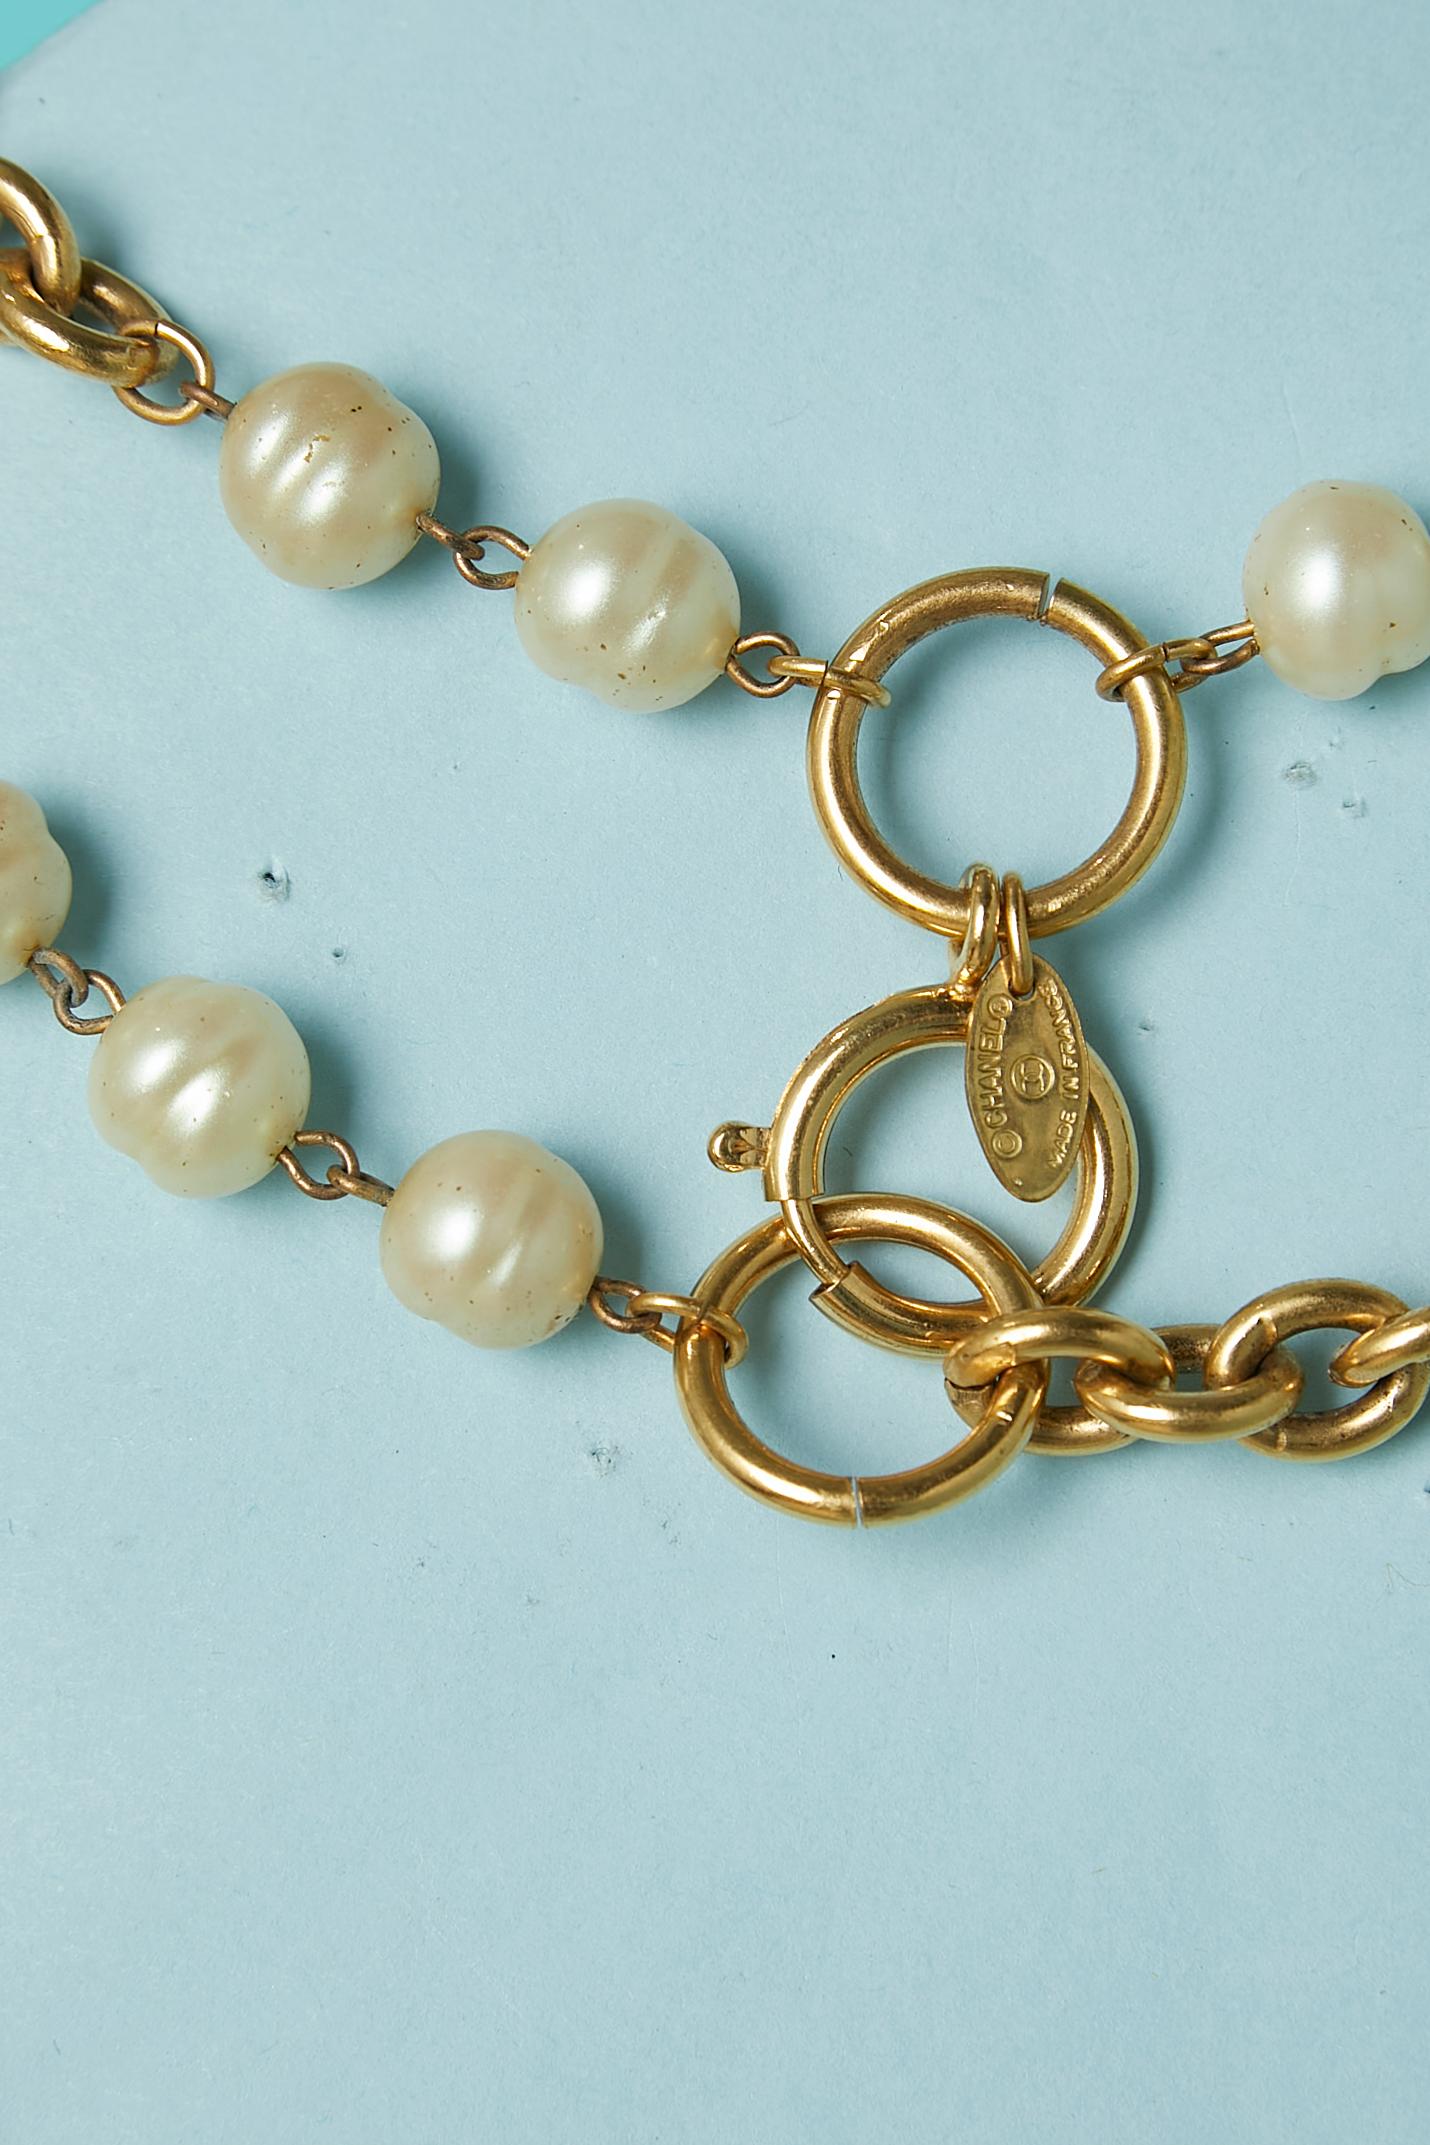 CIRCA 1980er Jahre Zwei Perlenreihen (synthetische Perlen)  ) und Kettenhalsband. 
Länge= 95 cm 
Haken- und Ösenverschluss 
Kann auch als Gürtel getragen werden